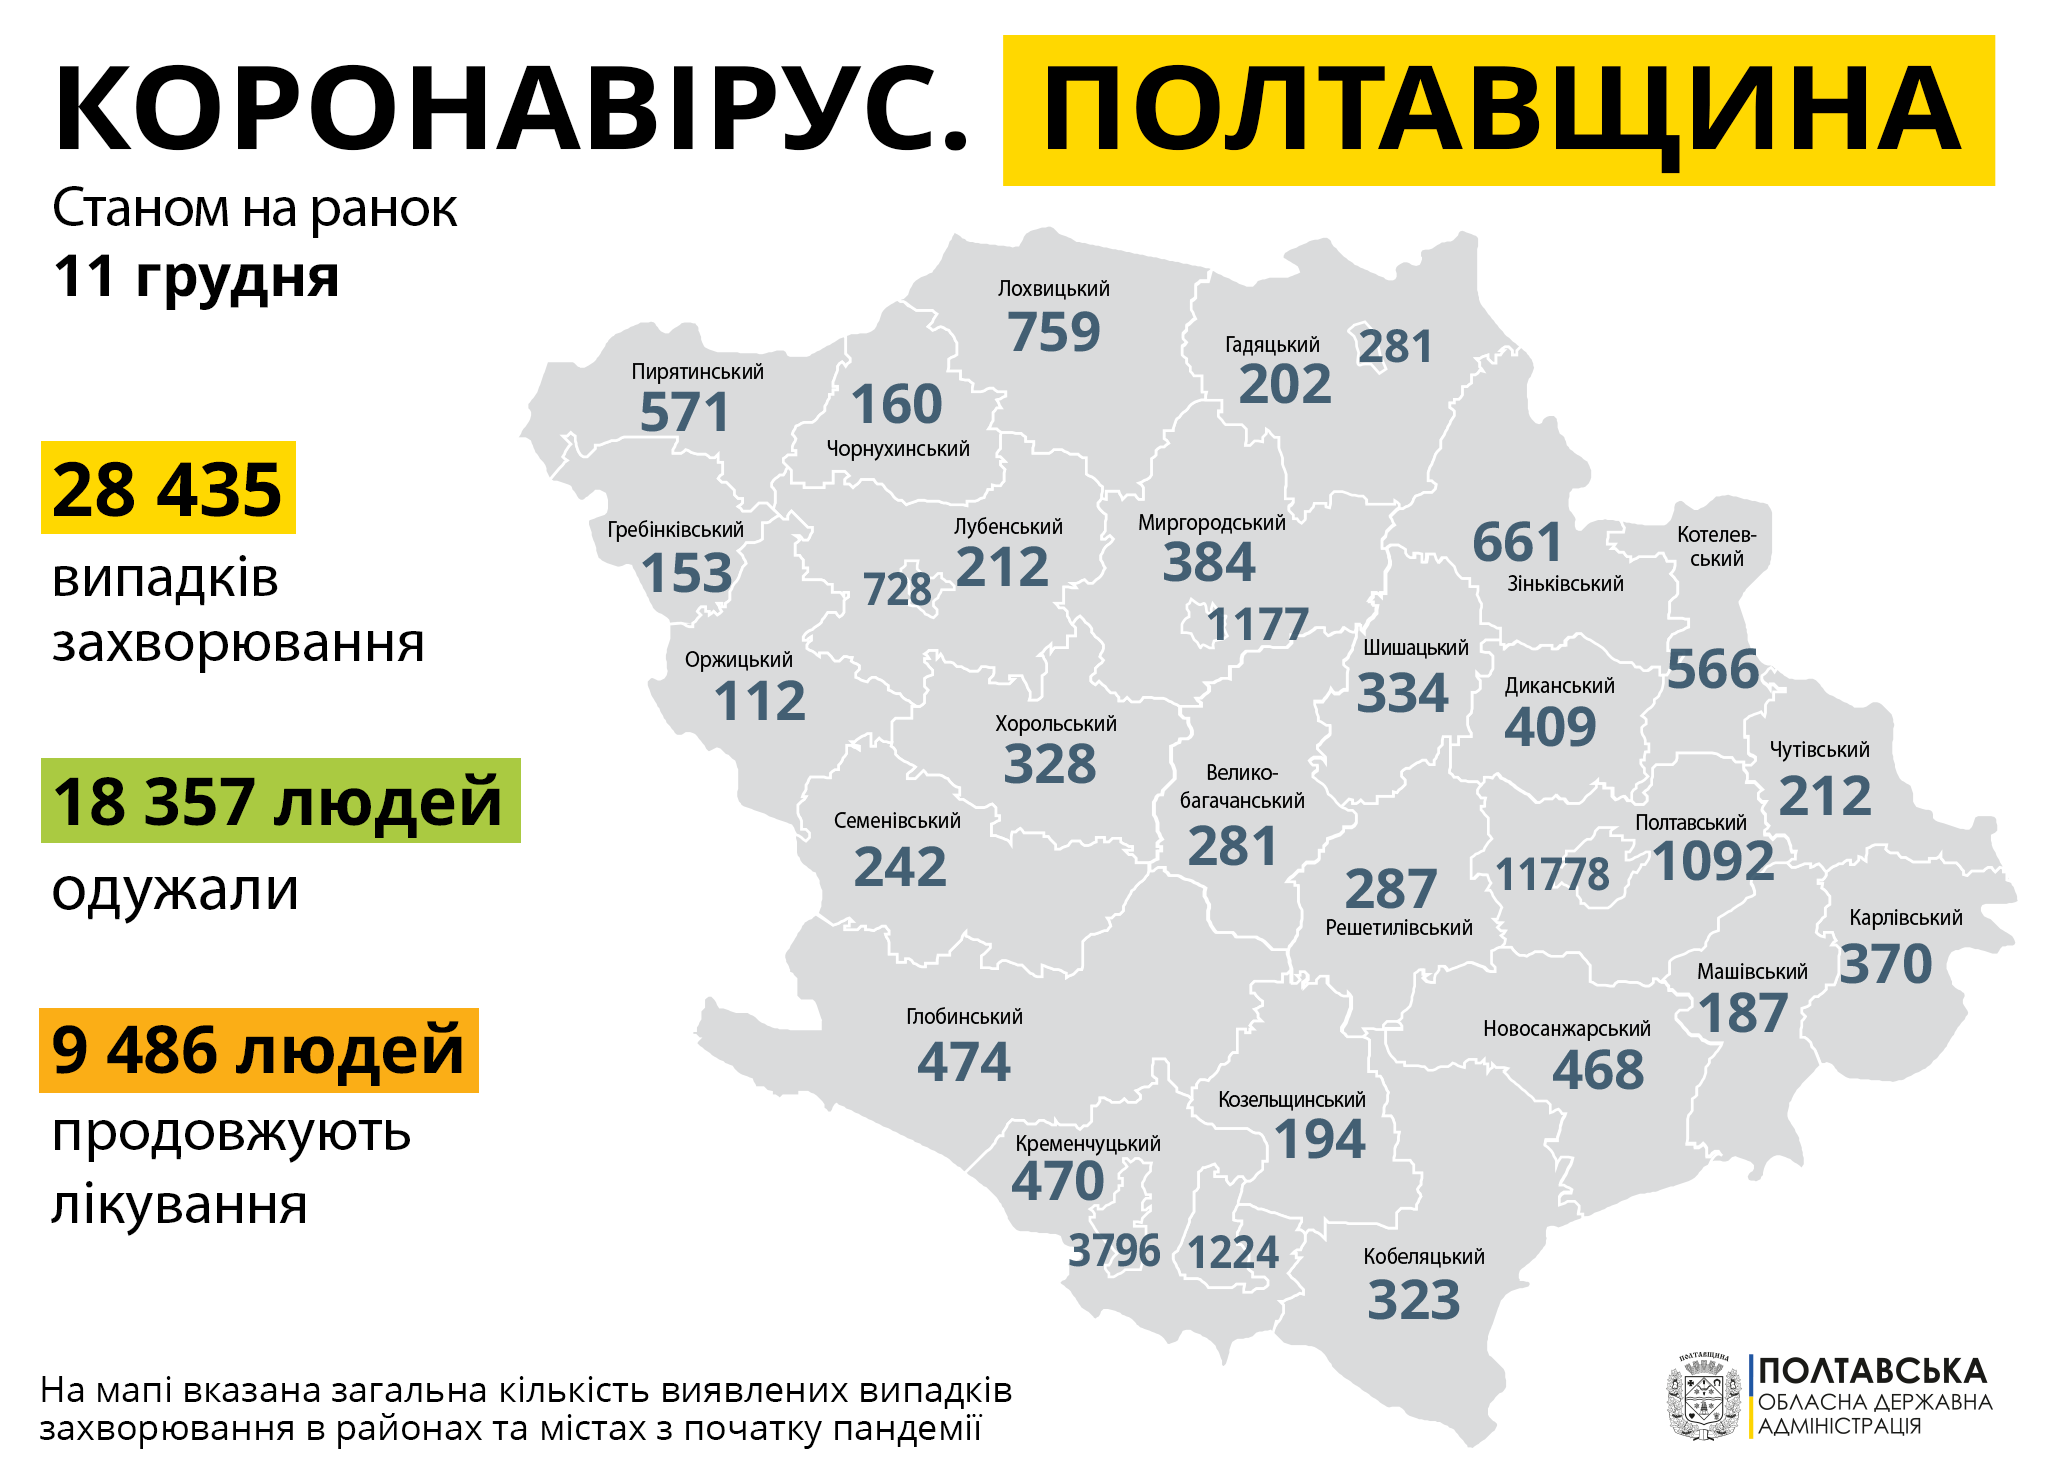 На Полтавщині за минулу добу зареєстровано 663 нових випадків захворювання на COVID-19